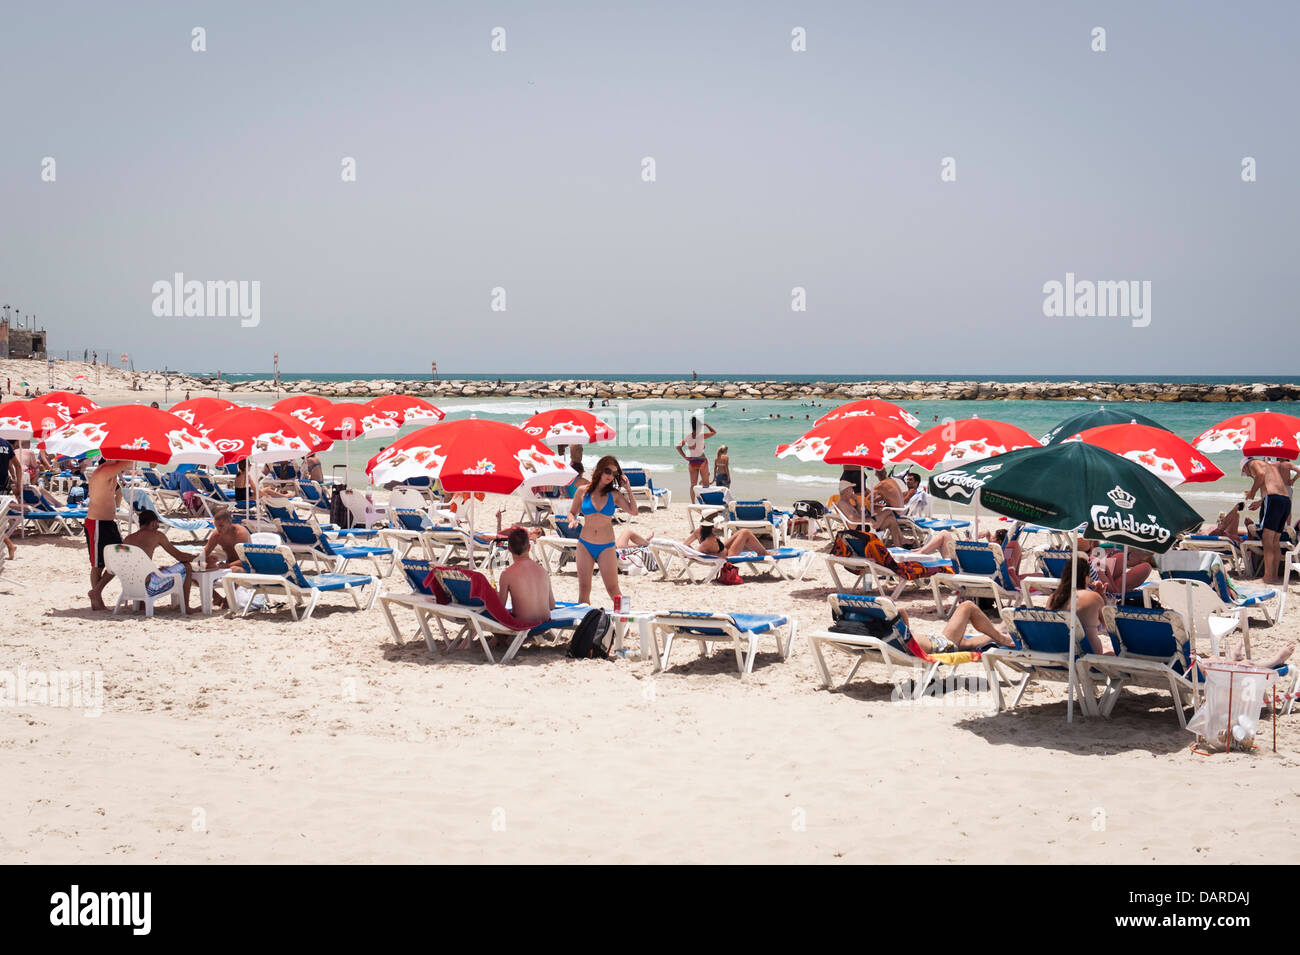 Israel Tel Aviv sand Strand Sonnenschirme Sonnenschirme sonnenschirm Meer liege  Liegestühle Personen Sonnenanbeter Schwimmen Schwimmer Stein Wellenbrecher  Meer Stockfotografie - Alamy